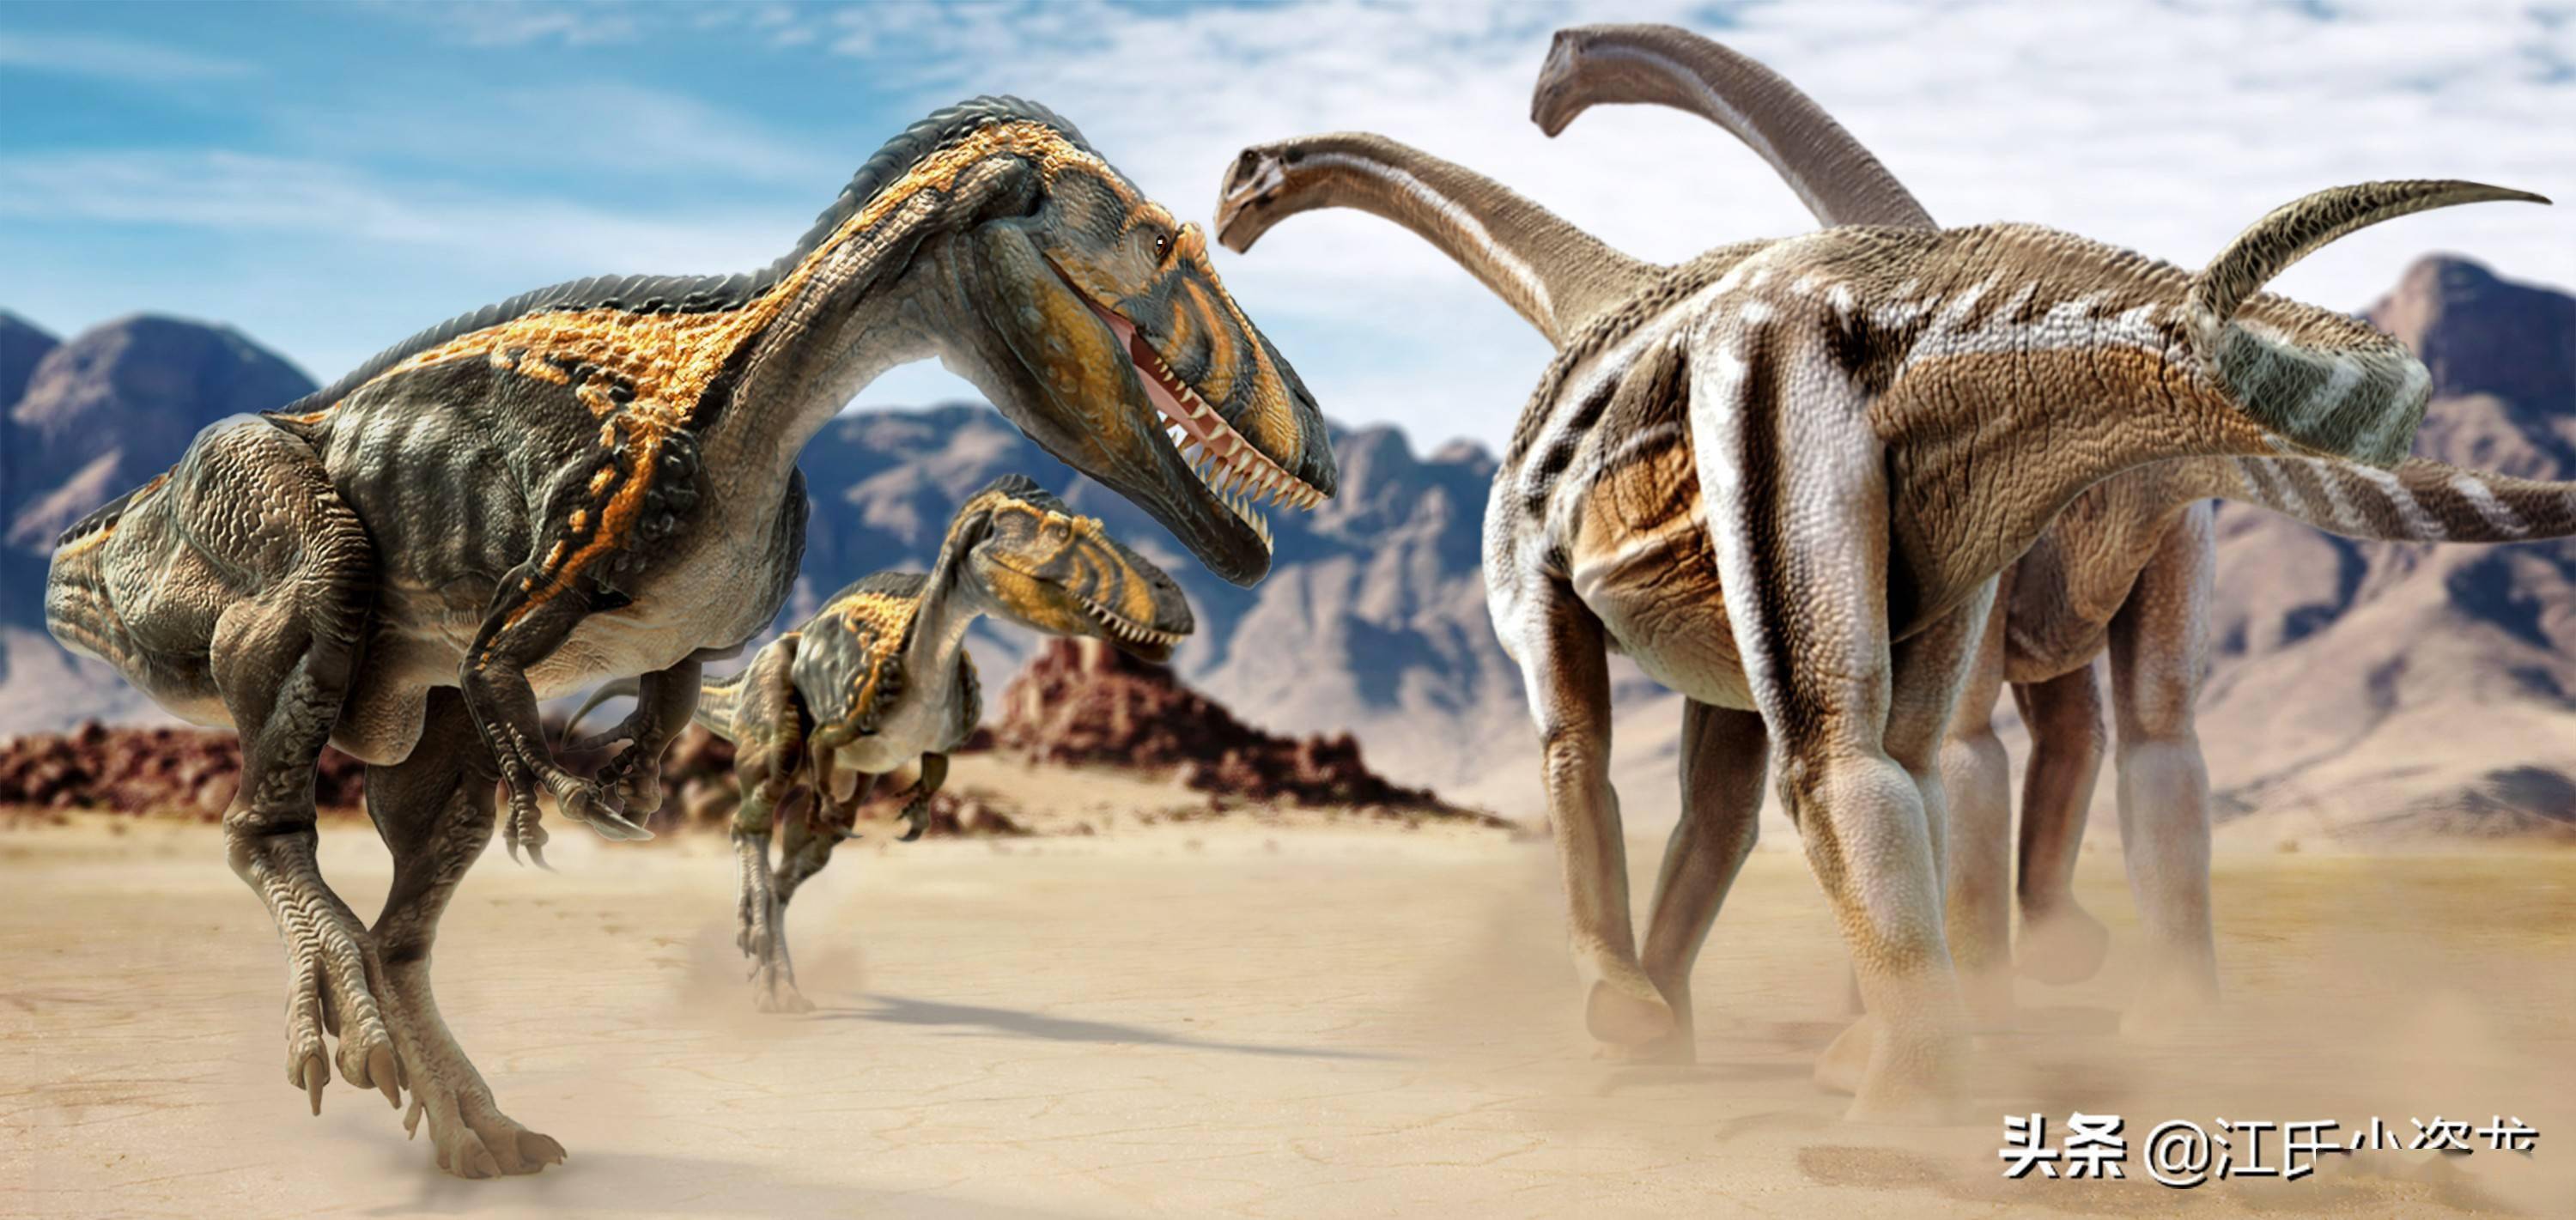 巨型恐龙迁移1000公里,证据竟是小石头_蜥脚类